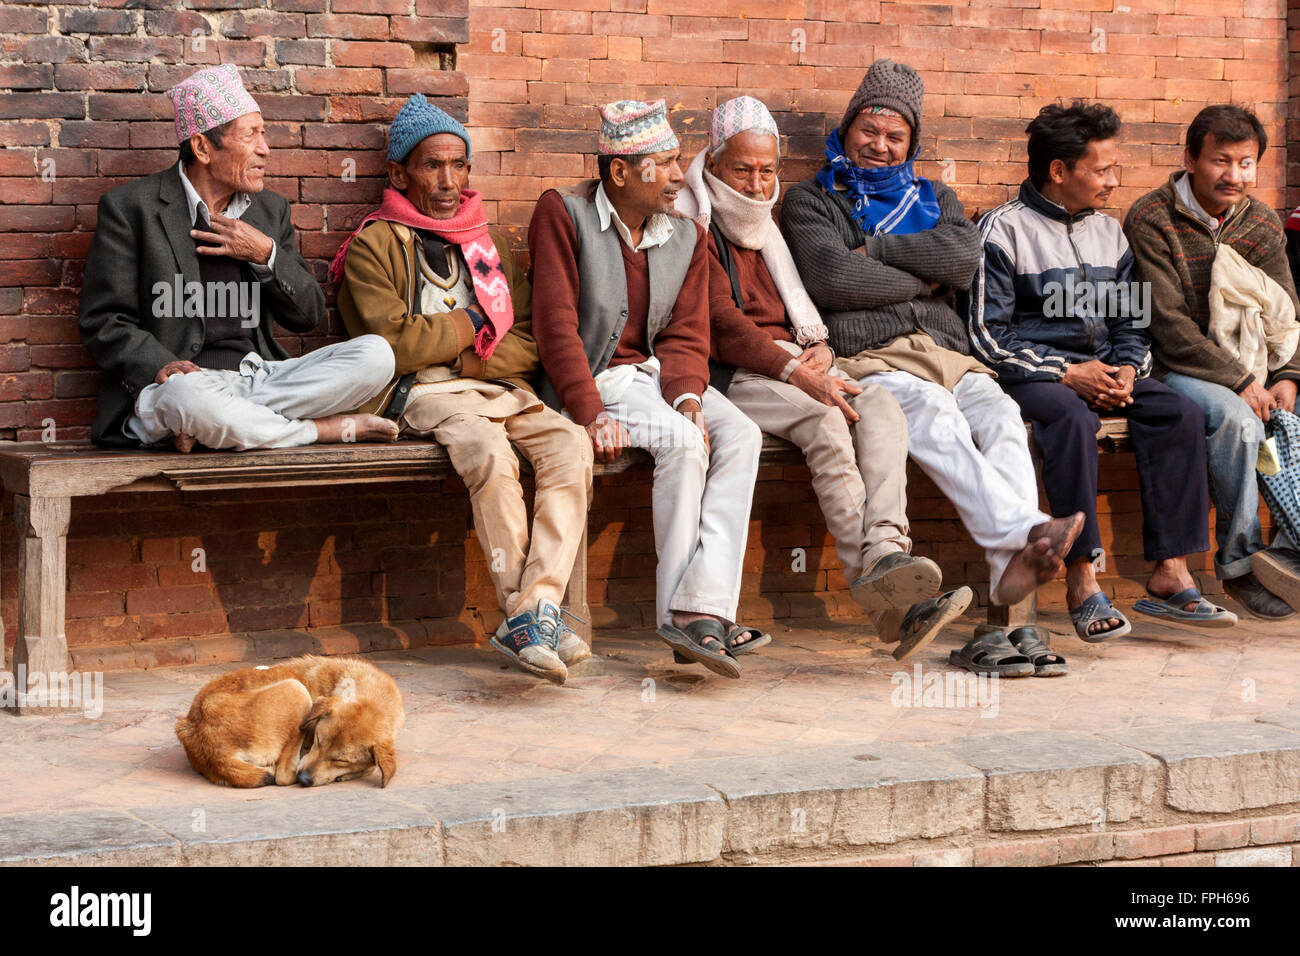 Le Népal, Patan. Les hommes portant des chapeaux traditionnels assis sur un banc, par le Palais Royal, Durbar Square. Banque D'Images